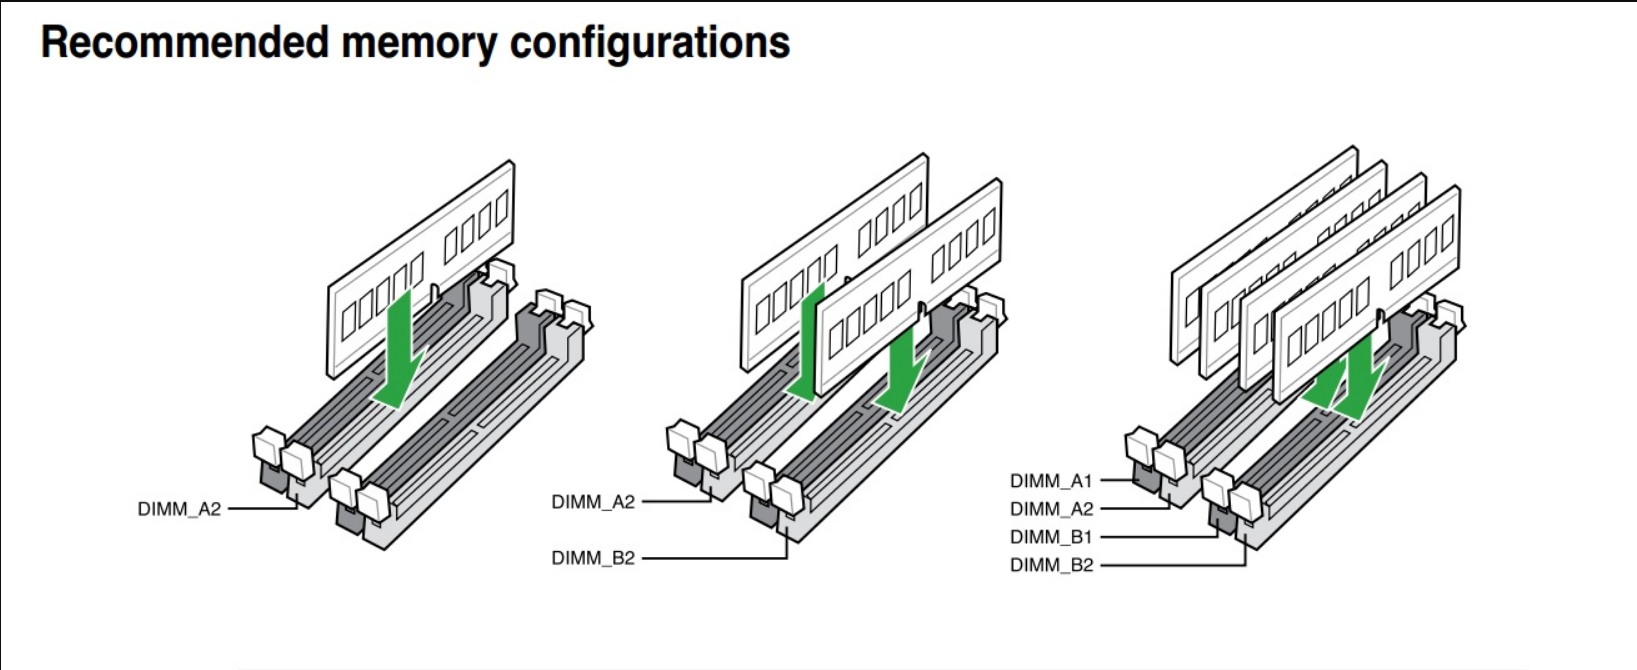 2 канальная память. Как поставить 3 планки оперативной памяти ddr3. Как правильно ставить планки оперативной памяти ddr3. Двухканальный режим оперативной памяти MS-7390. Двухканальный режим оперативной памяти ddr3.